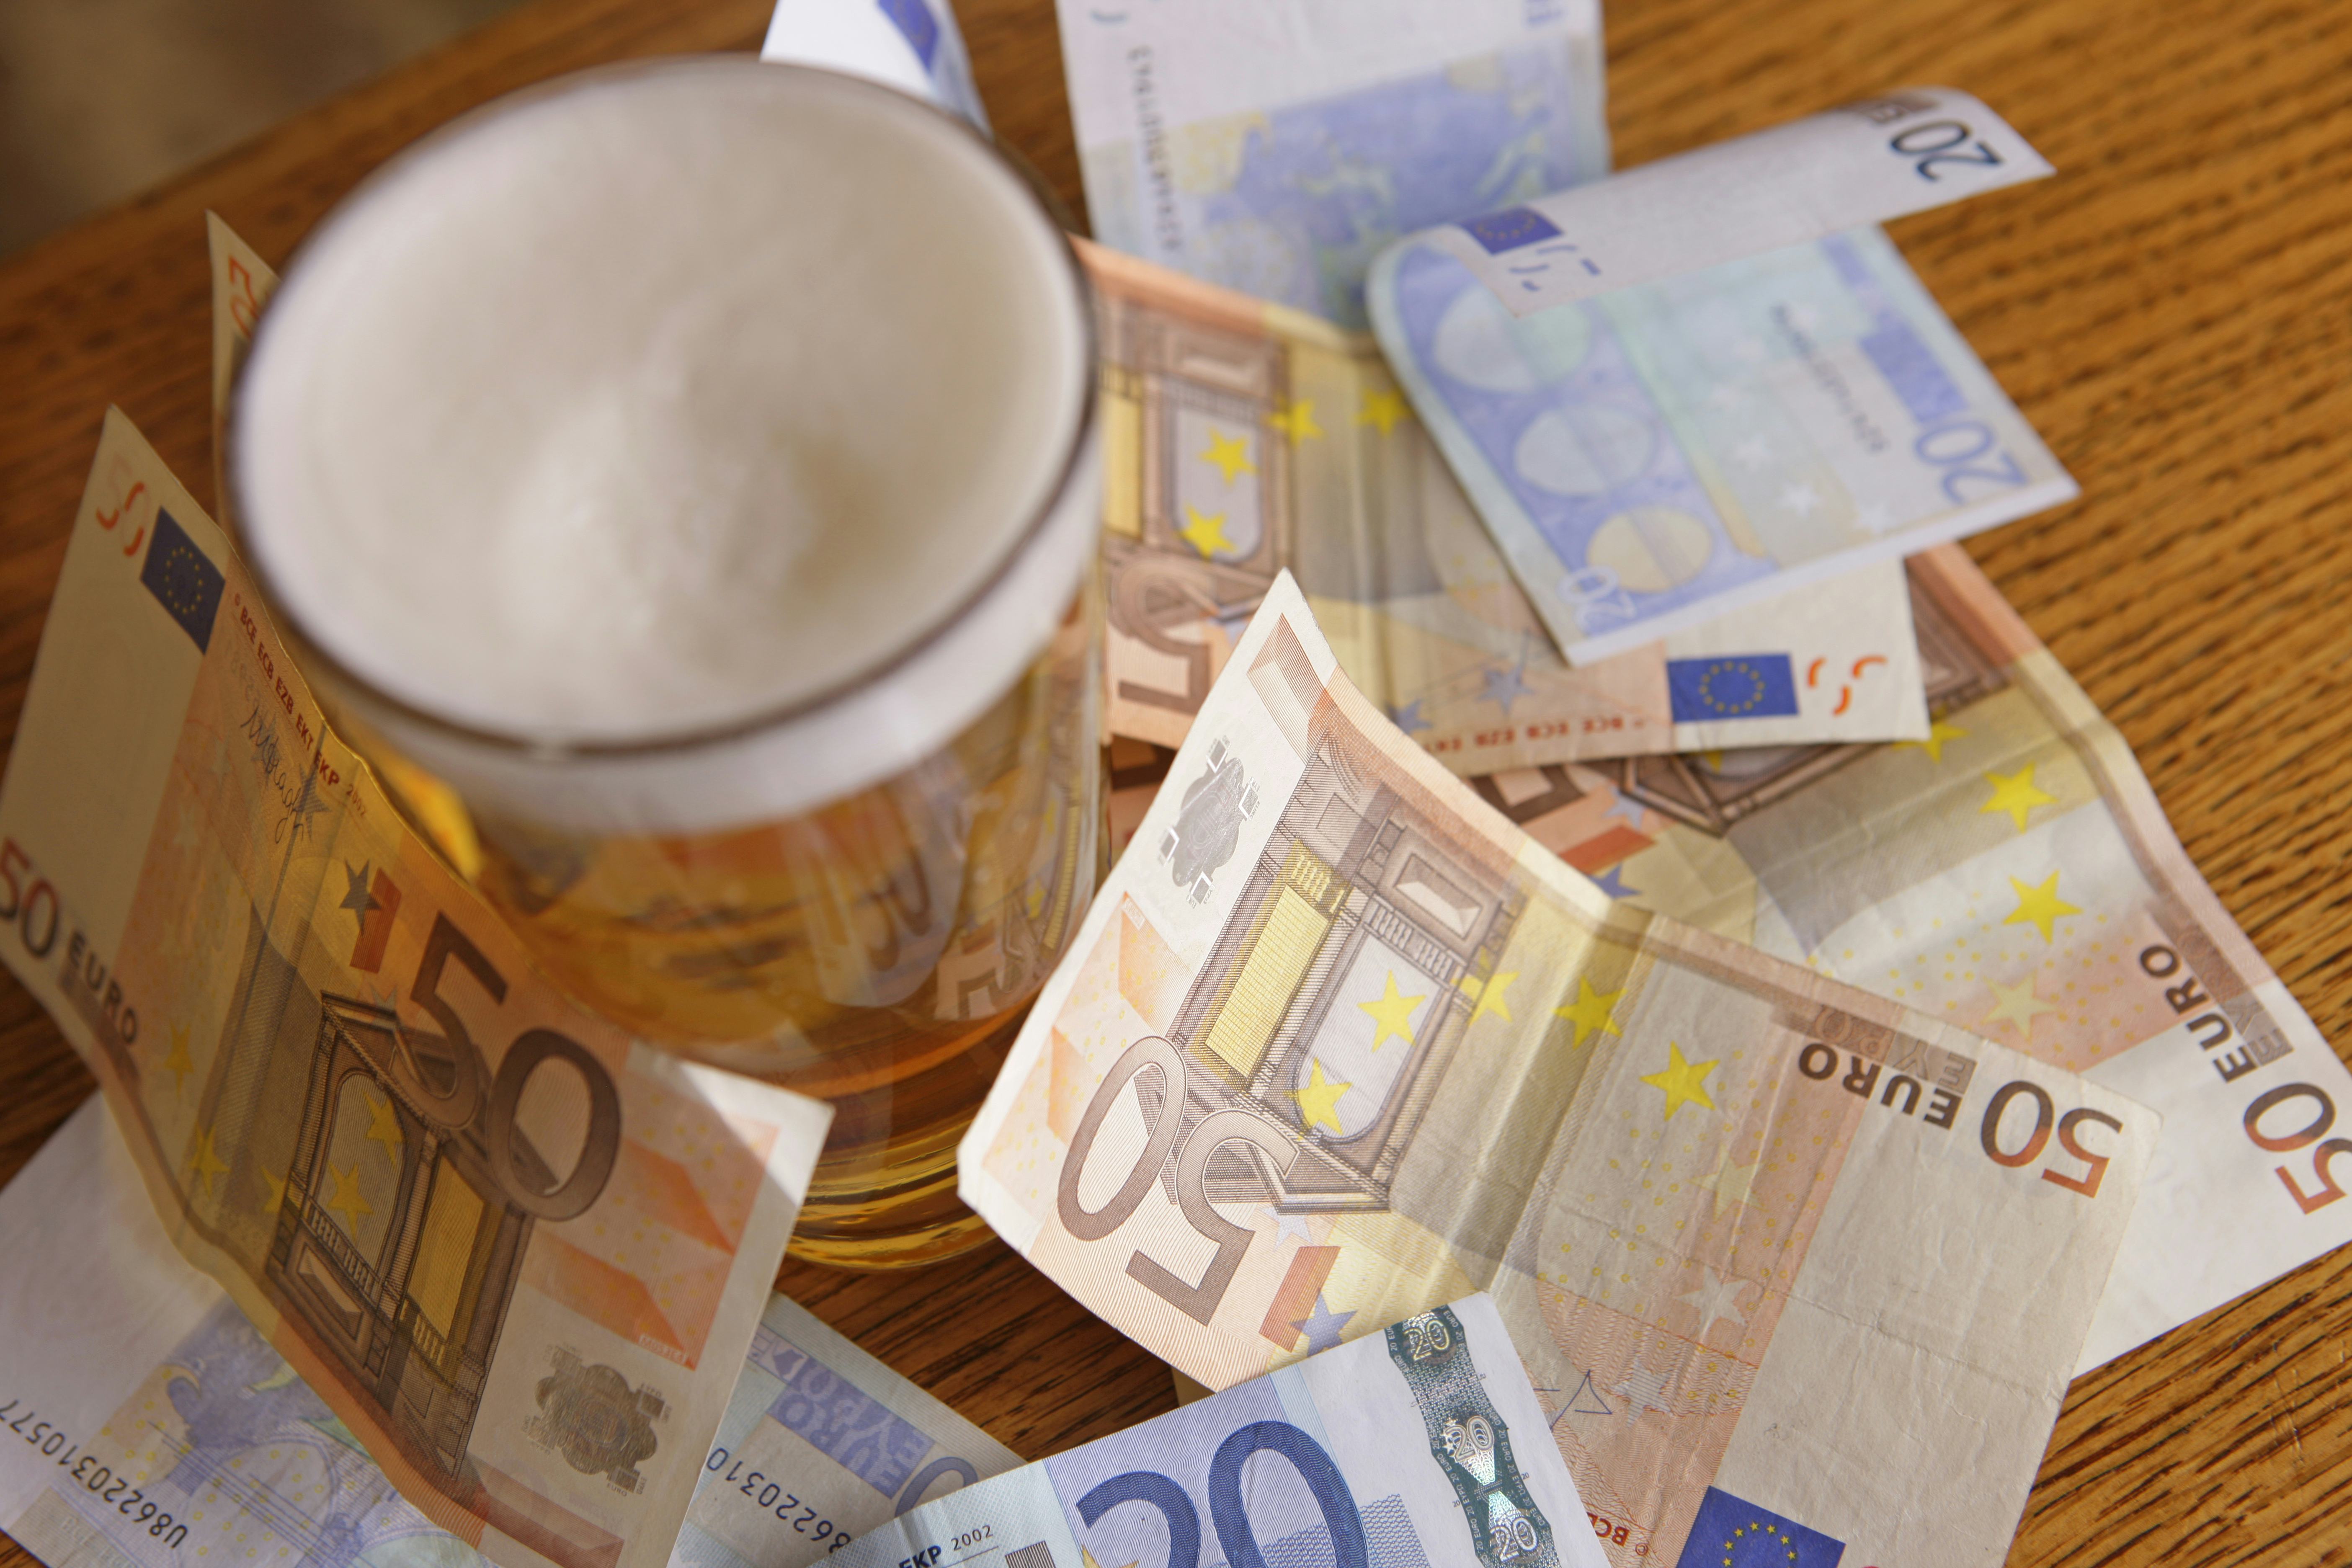 Bierprijs horeca voor 2021: Grolsch verhoogt, InBev, Heineken en Swinkels wachten af